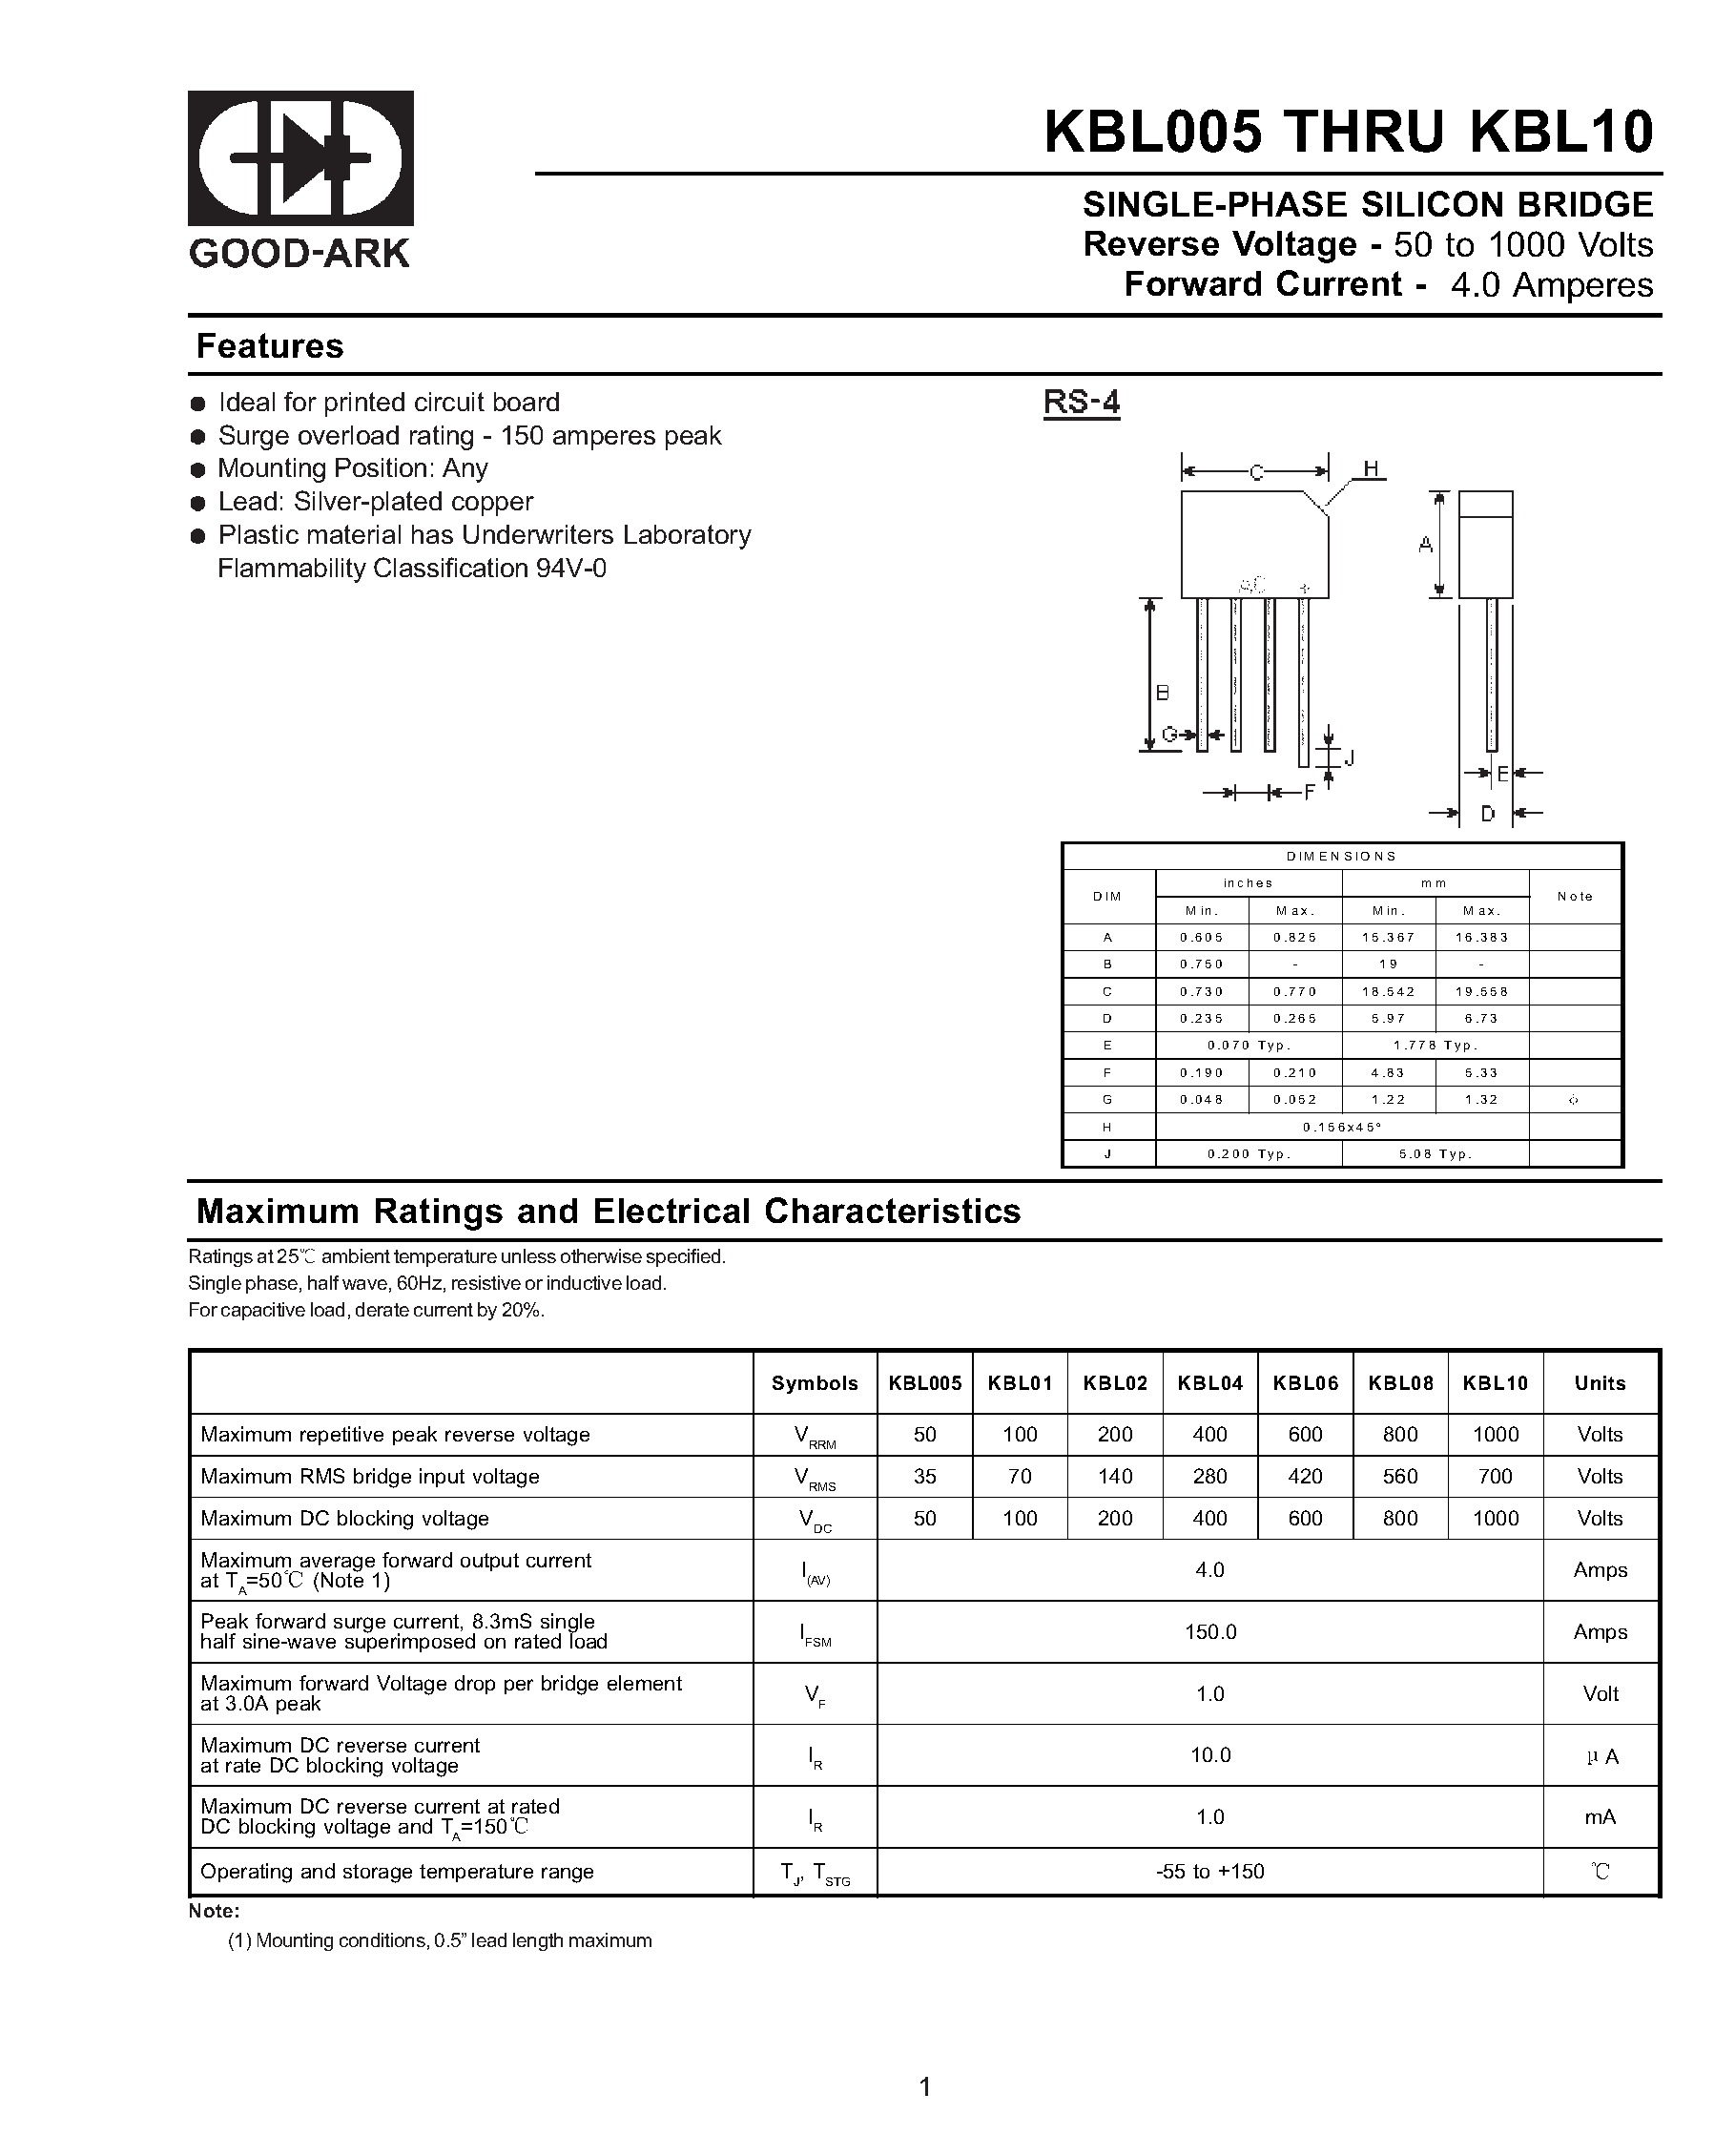 Datasheet KBL01 - SINGLE-PHASE SILICON BRIDGE page 1